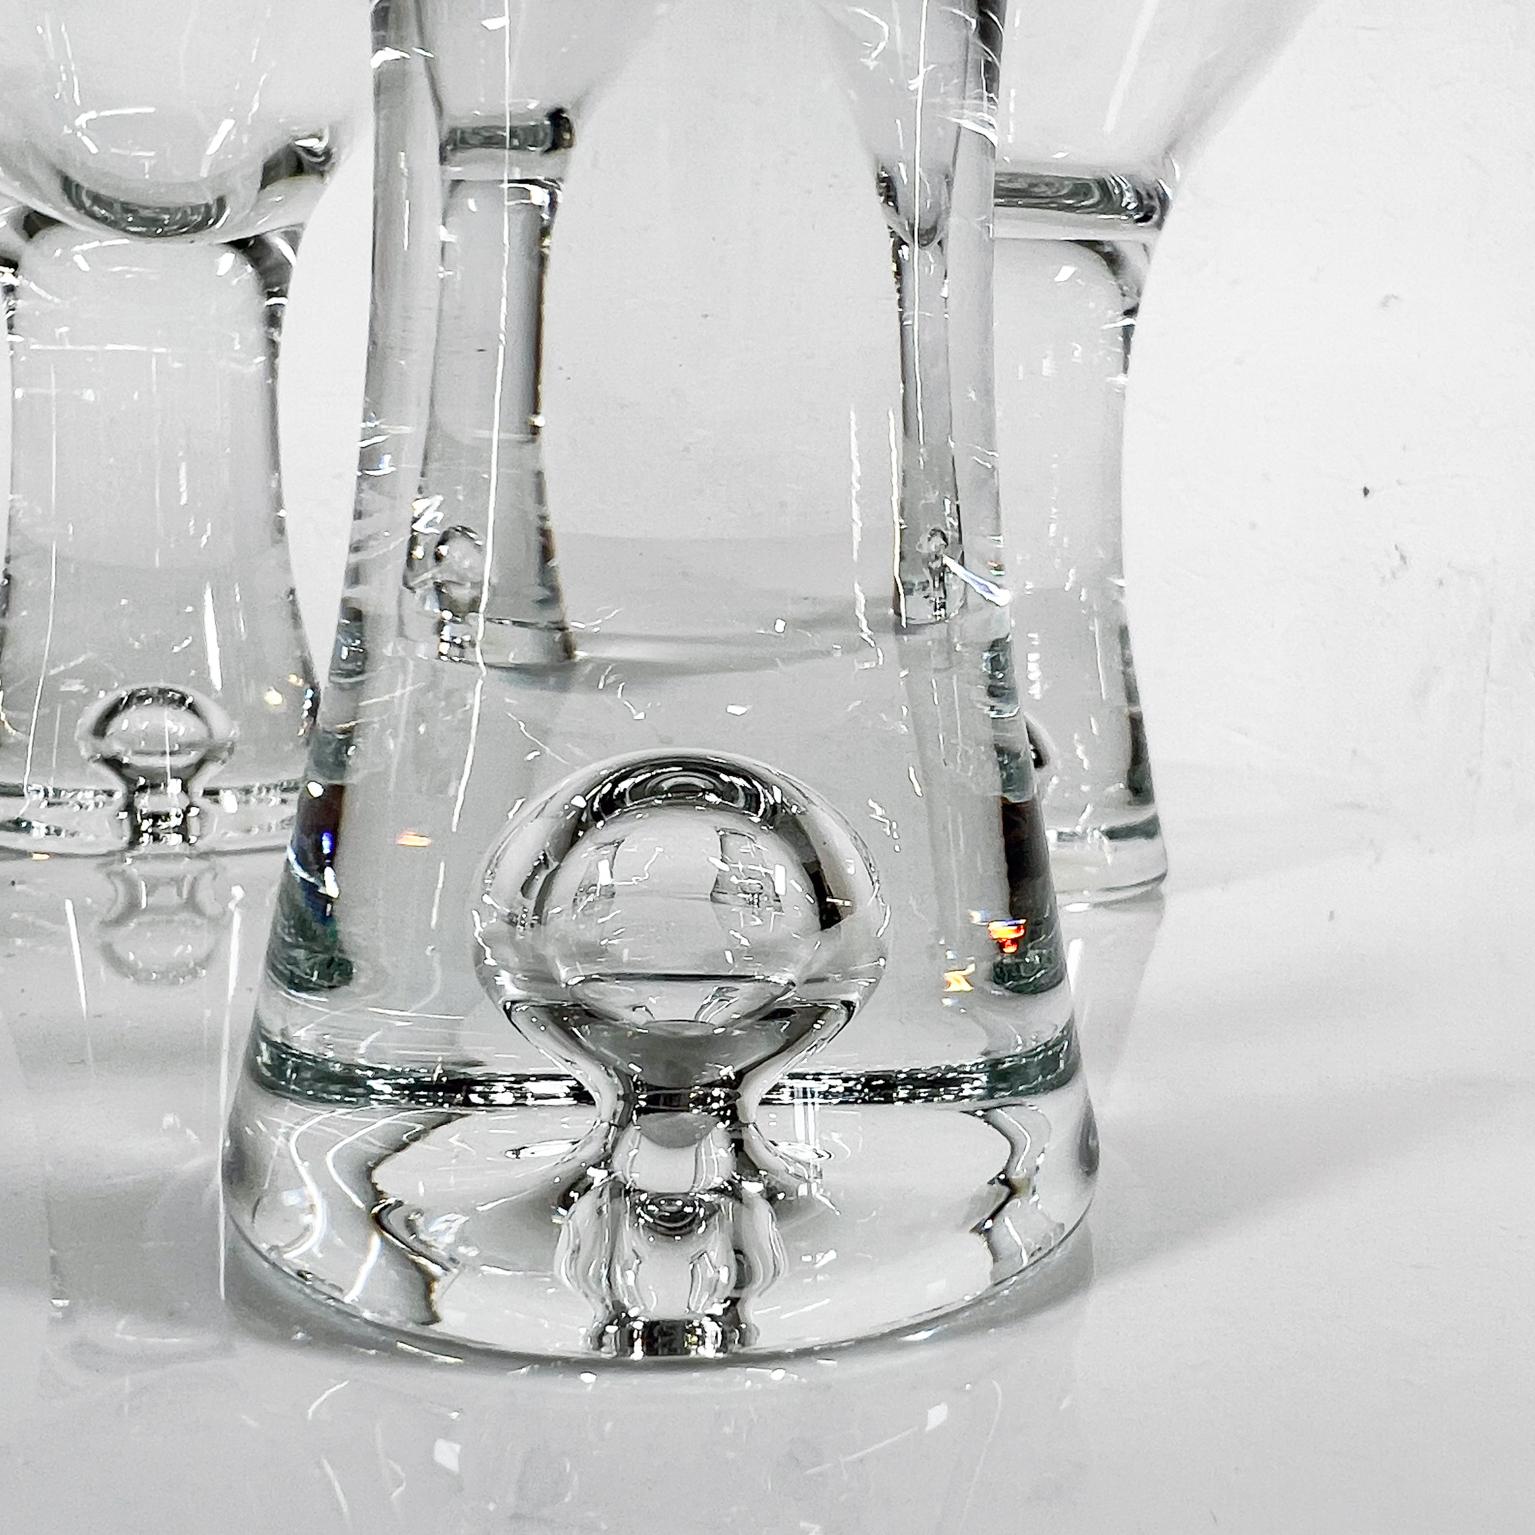 1952 Tapio Wirkkala Iittala Finland Set of 4 Martini Cocktail Glasses In Good Condition For Sale In Chula Vista, CA